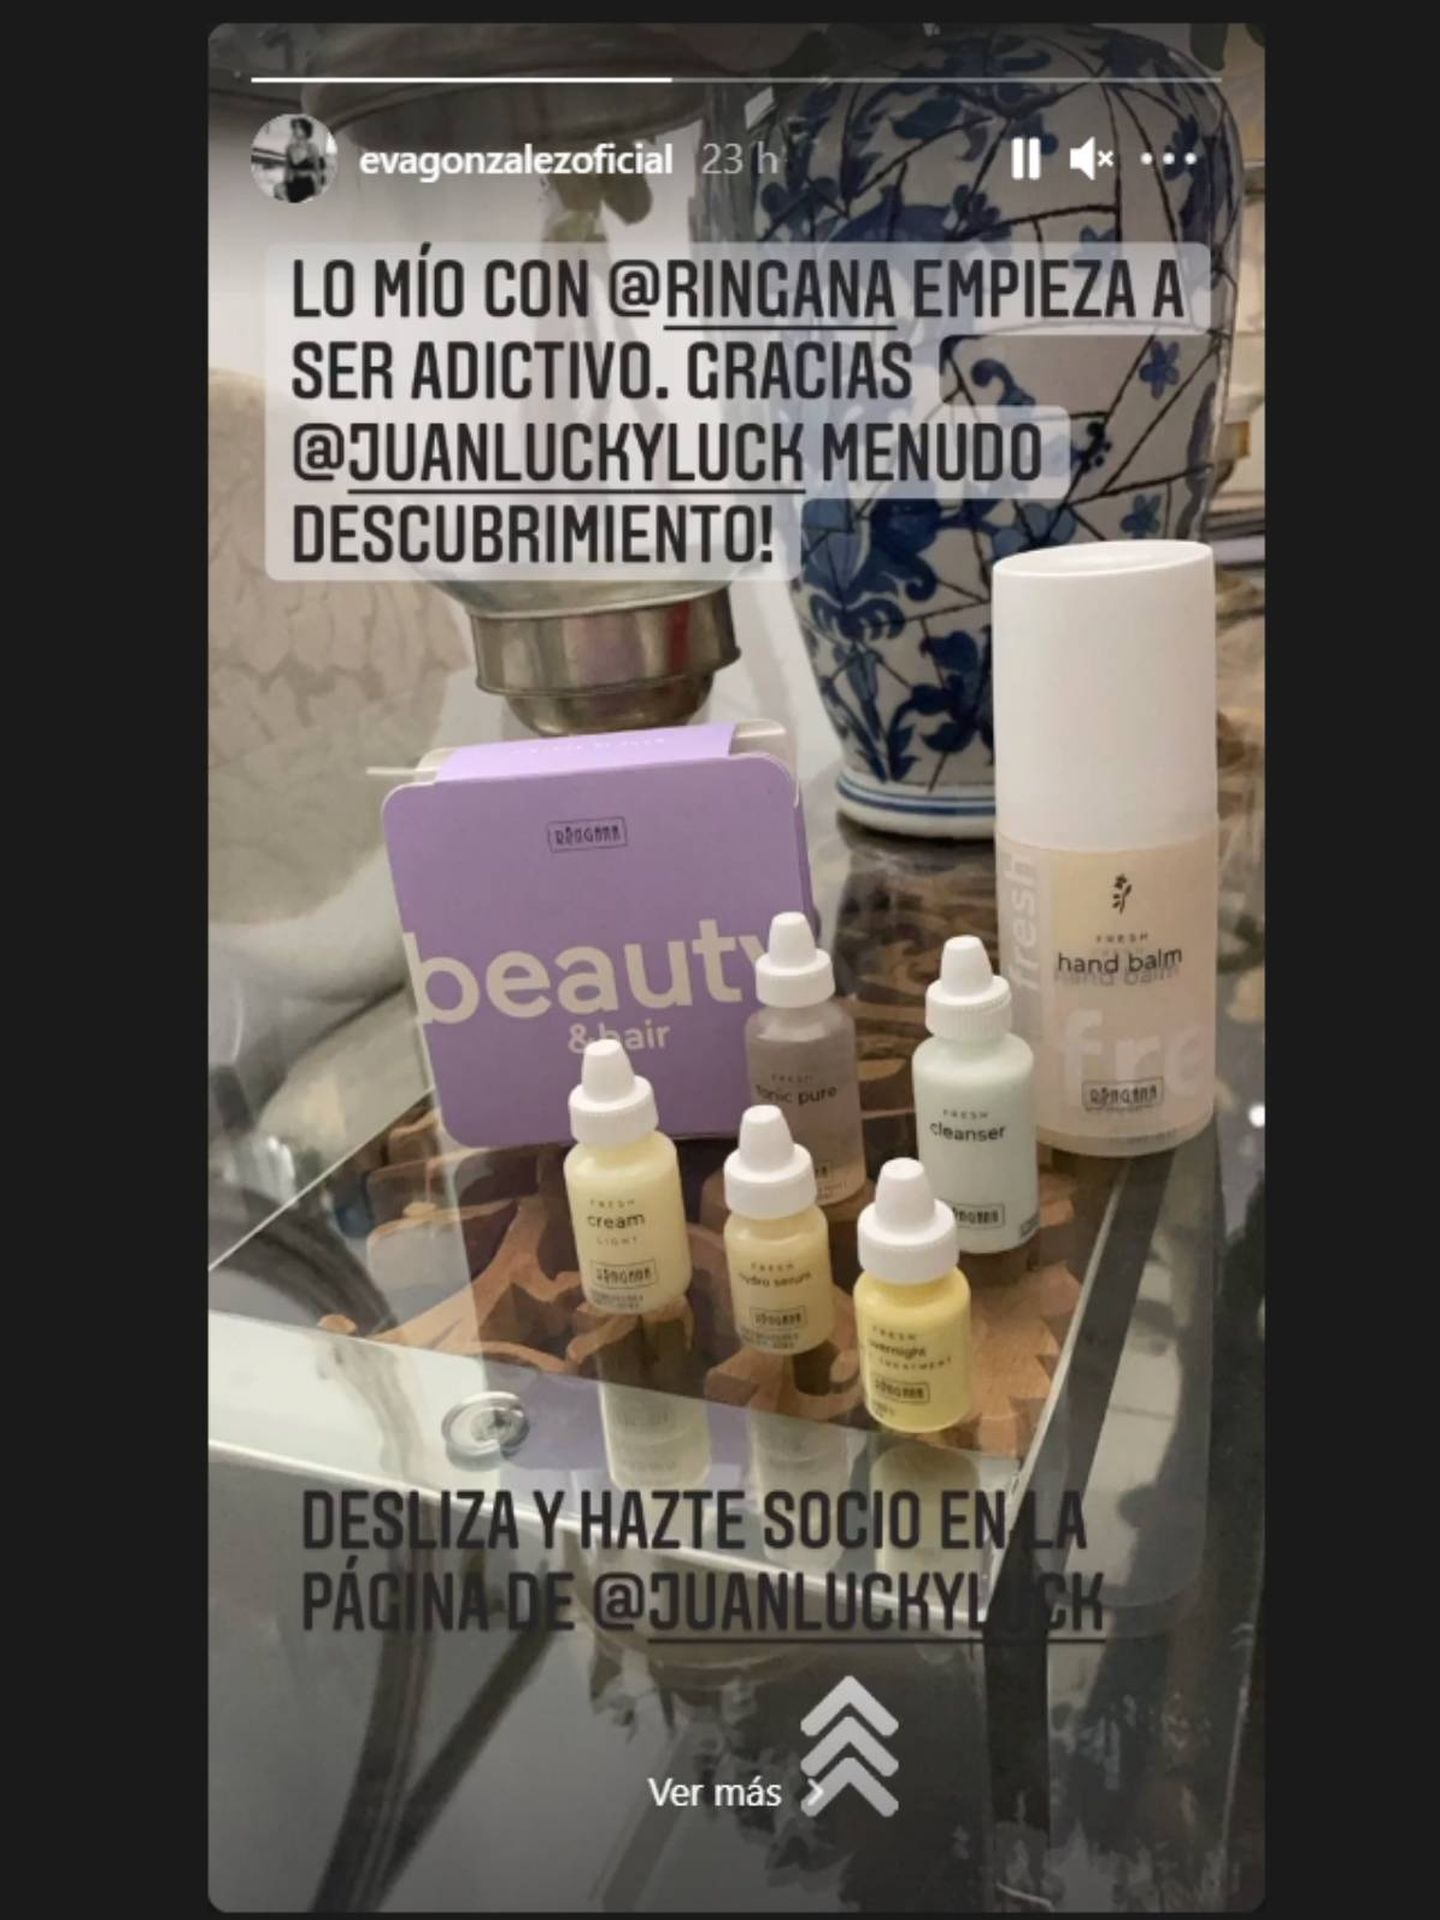 El kit de cuidado de la piel de Eva González. (Instagram @evagonzalezoficial)